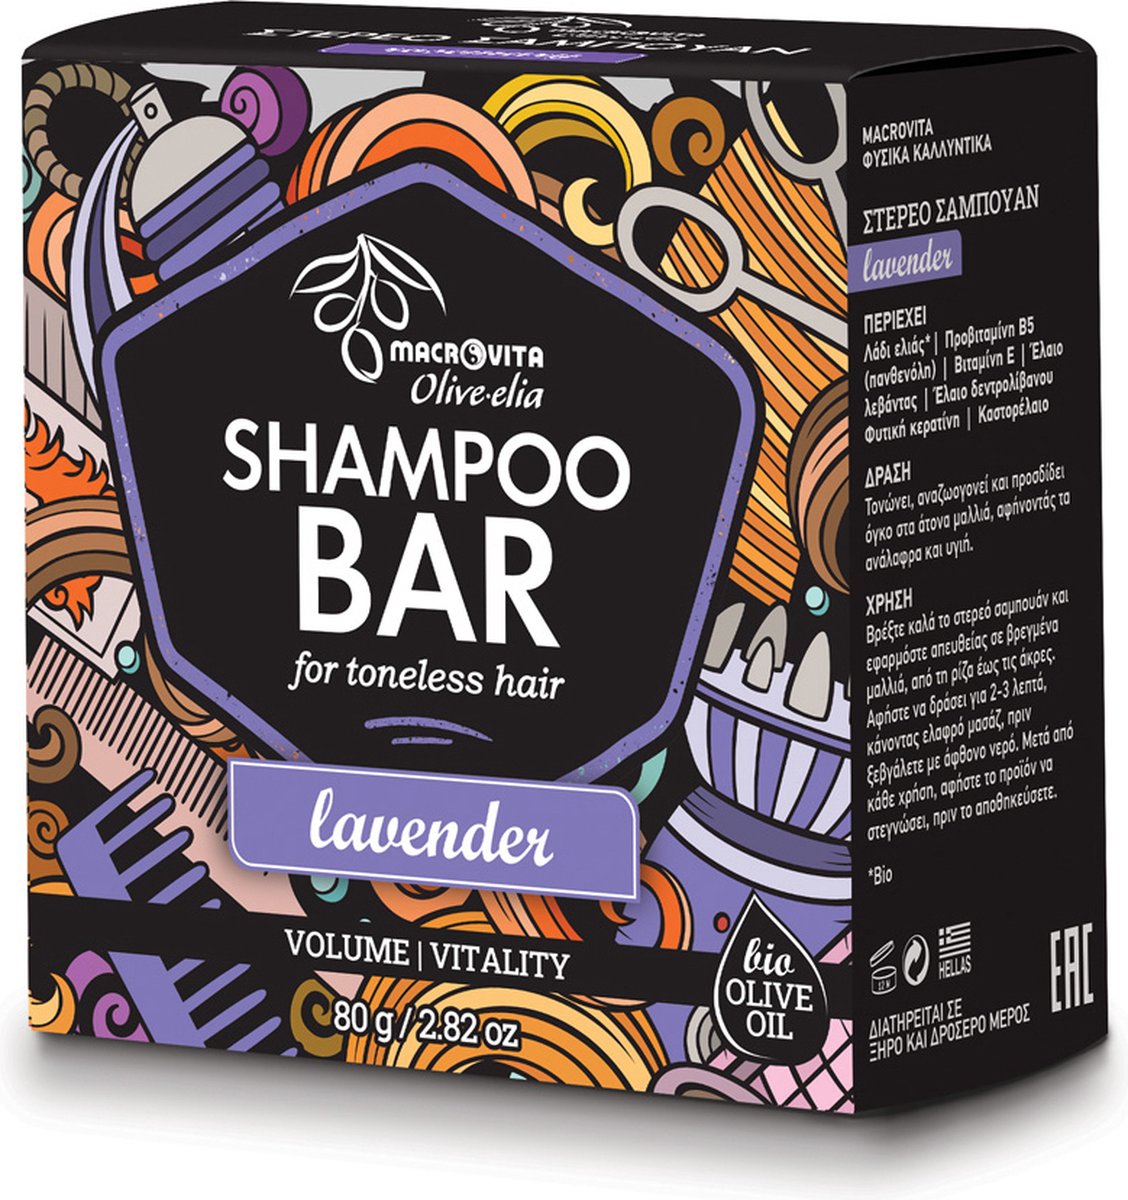 Olive-elia Shampoo Bar voor Futloos en/of Grijs Haar (Lavendel) - 80 gram